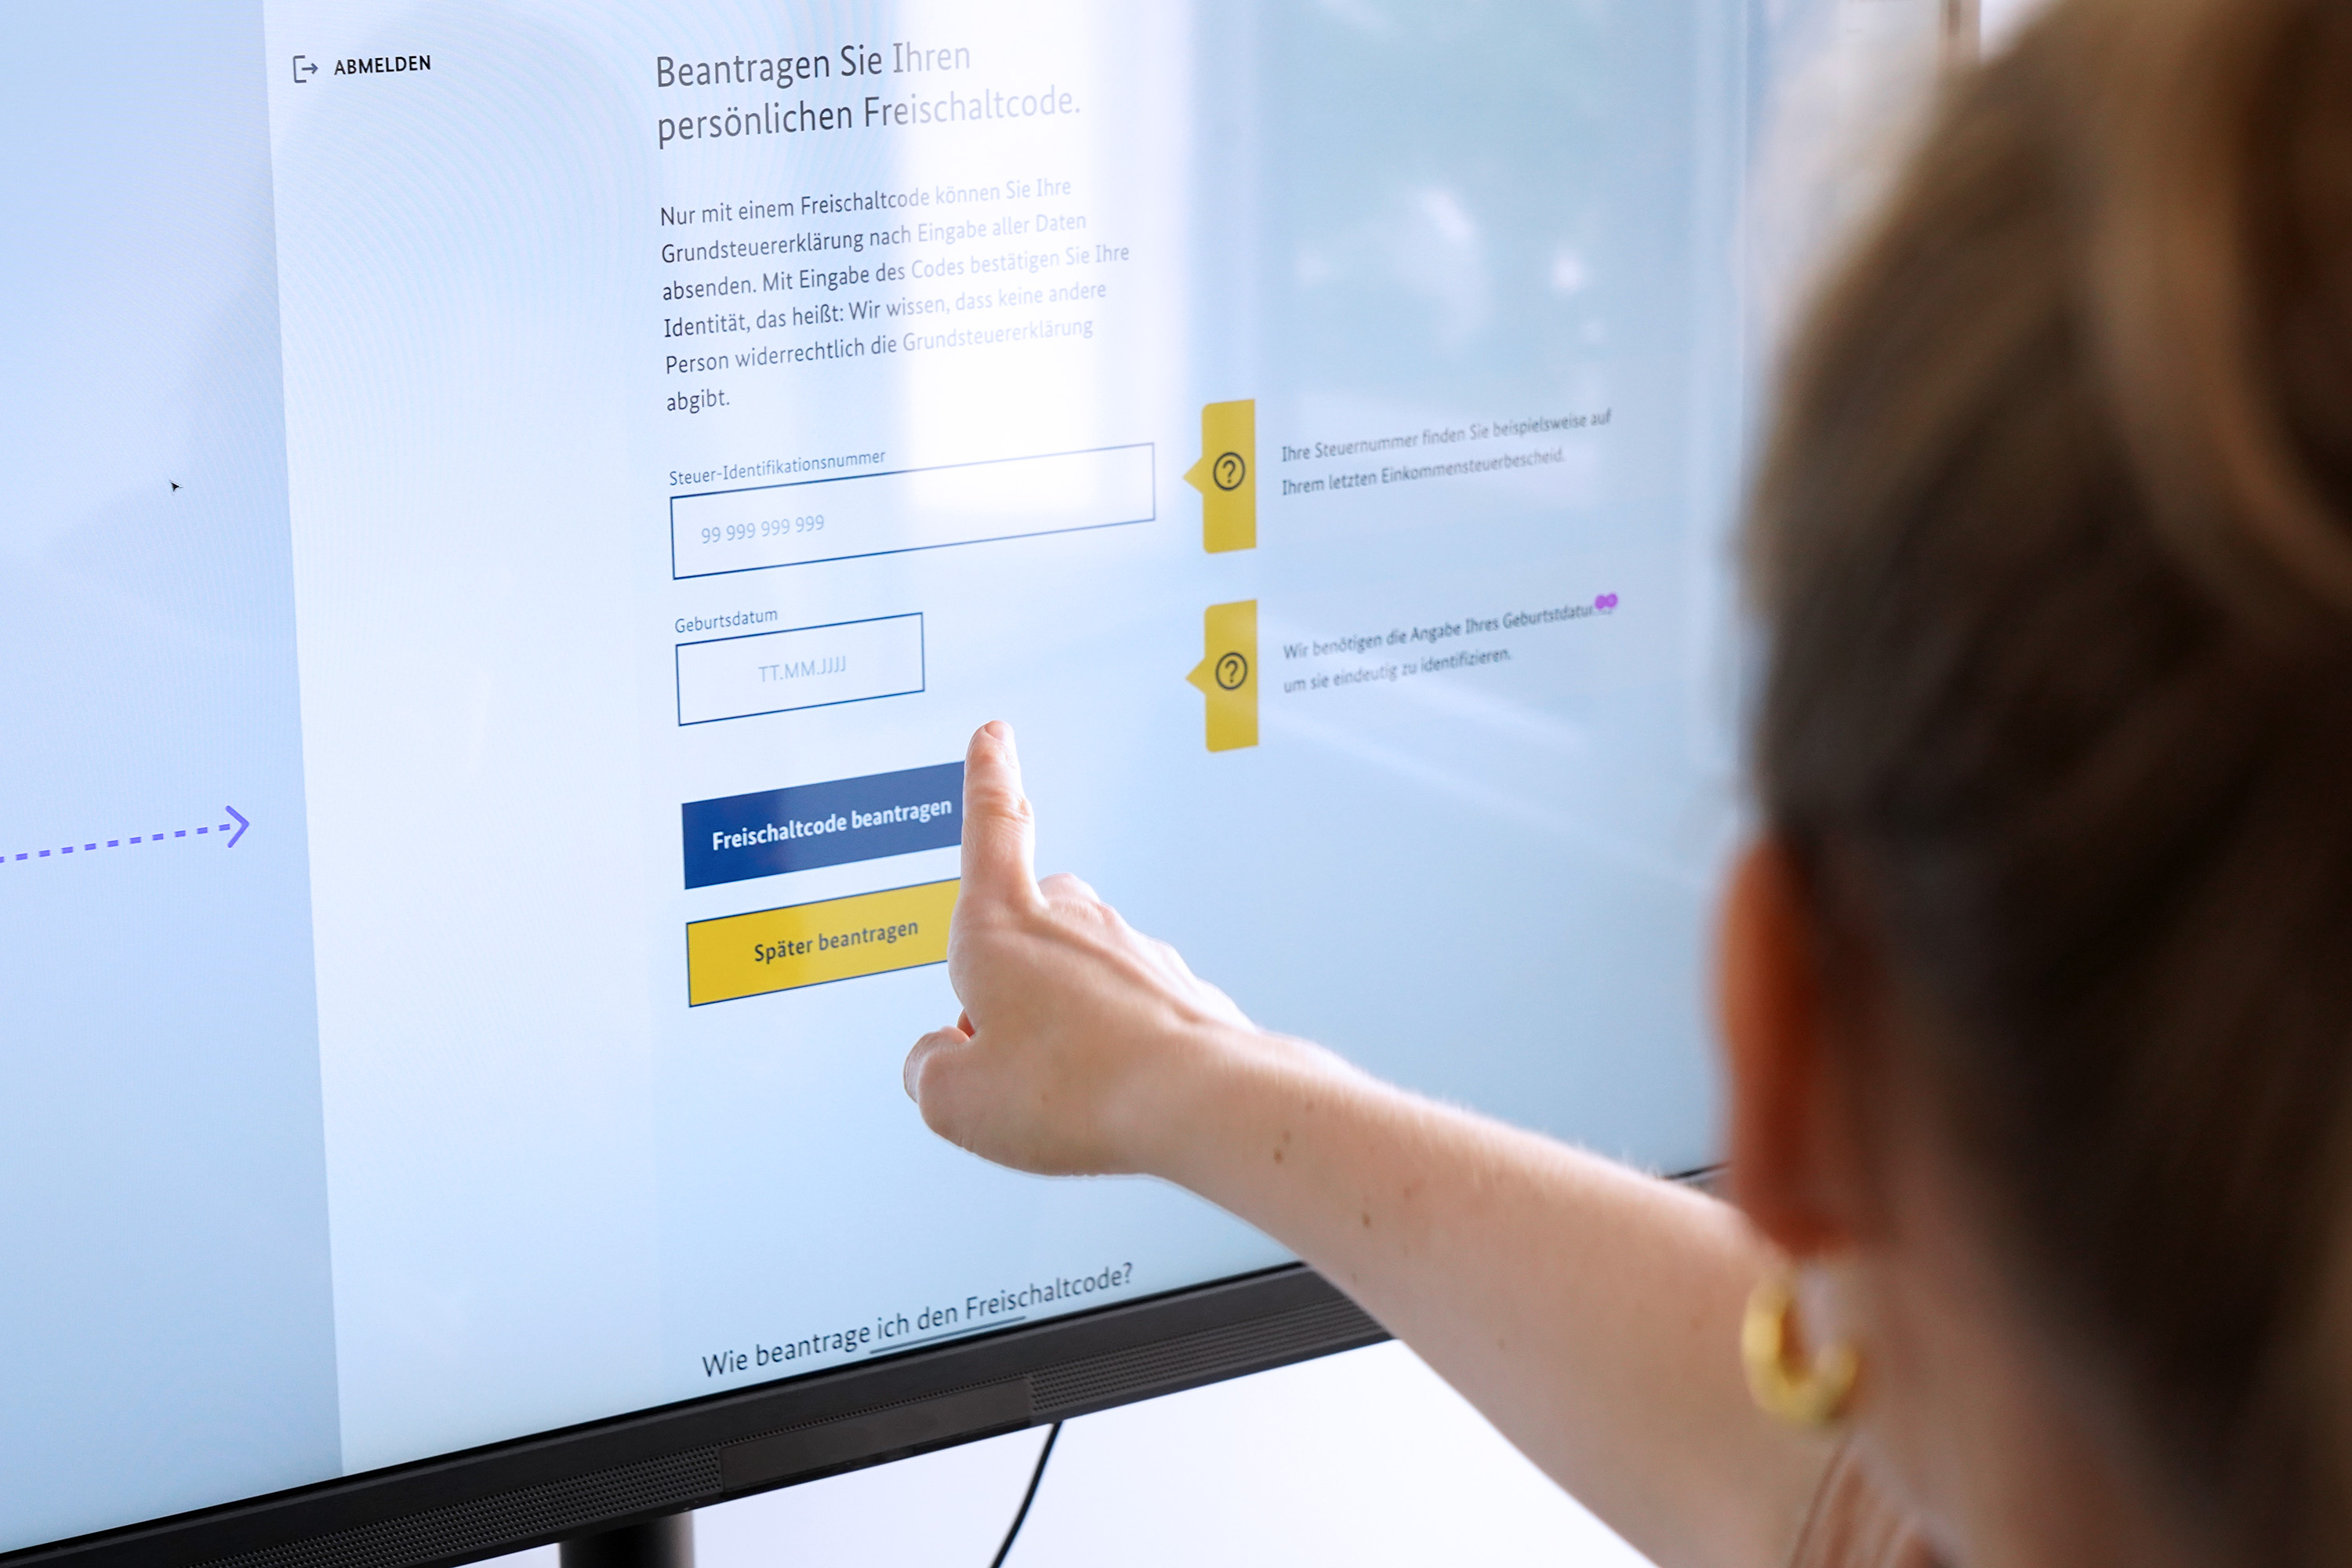 Eine Person zeigt mit dem Finger auf einen Bildschirm, der den Entwurf eines Online-Formulars mit mehreren Eingabefeldern und Knöpfen zeigt